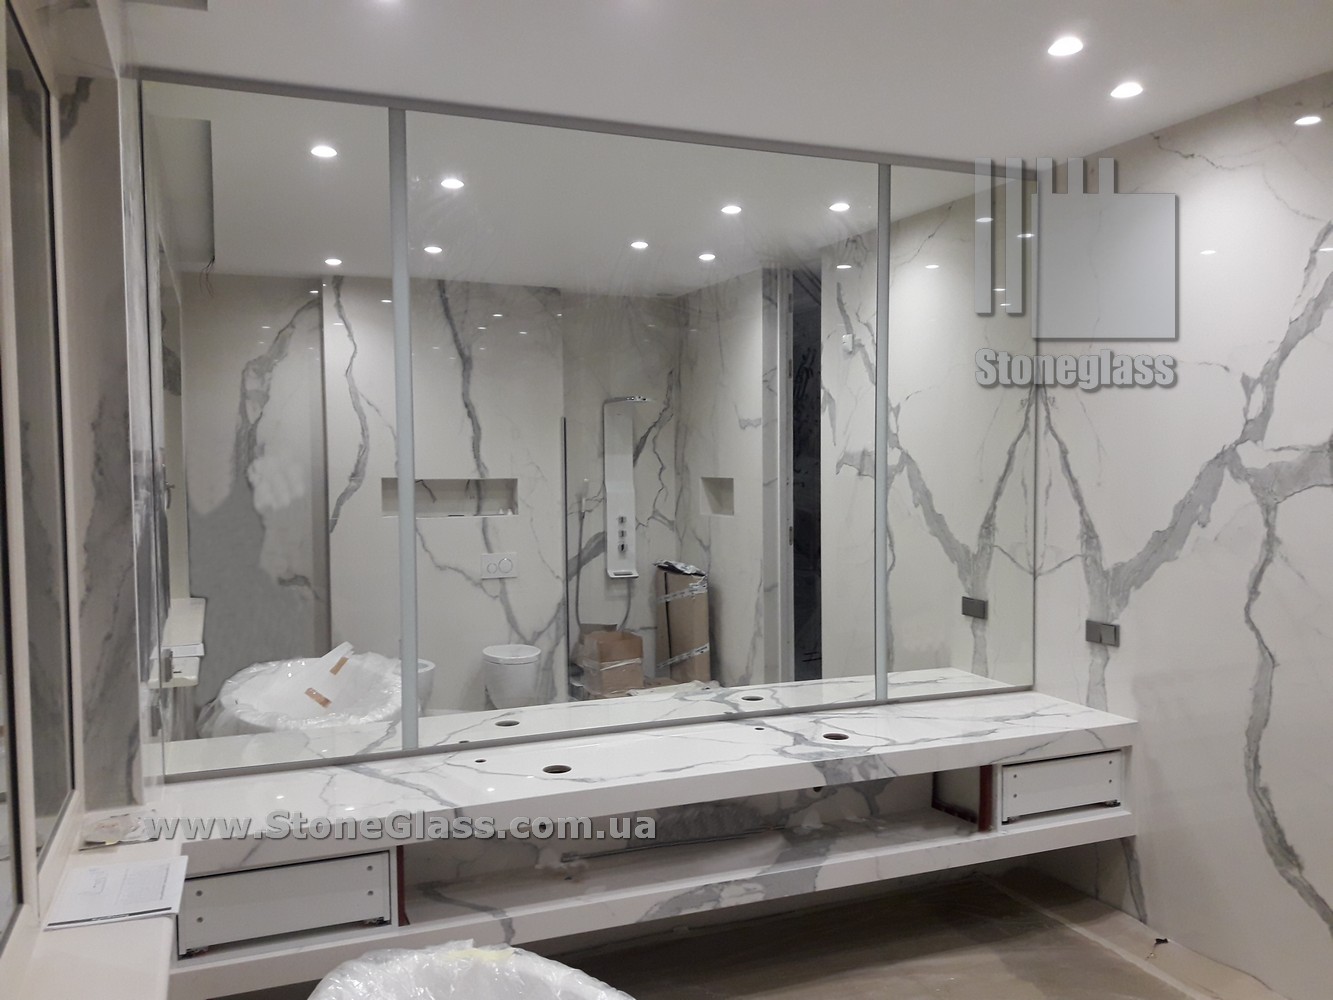 Вертикальные полосы подсветки для зеркала в ванной